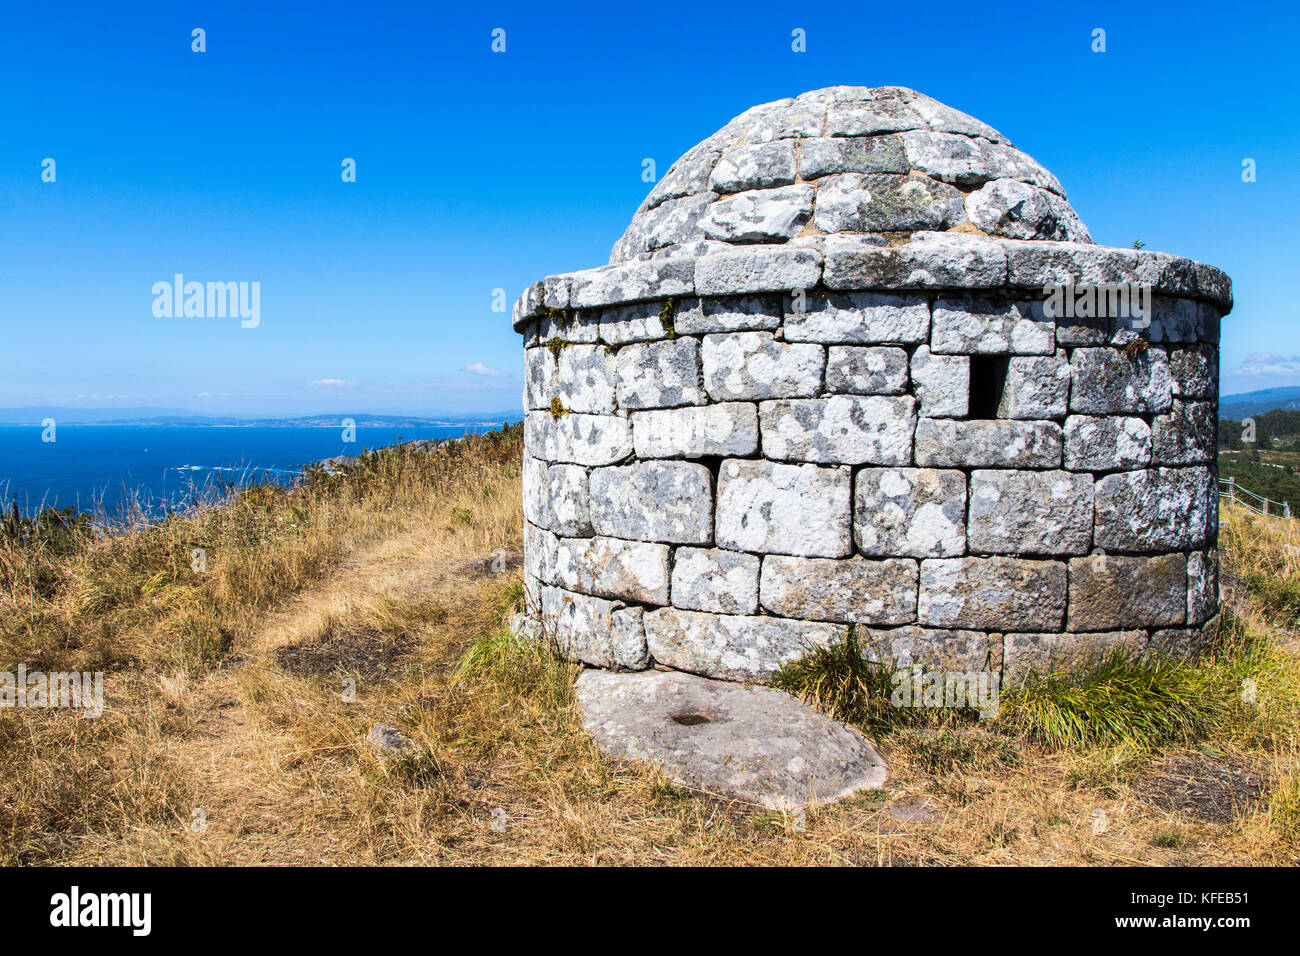 The Facho of Donon, an ancient stone lighthouse for guiding sailors in Monte do Facho, Cangas, Galicia, Spain Stock Photo